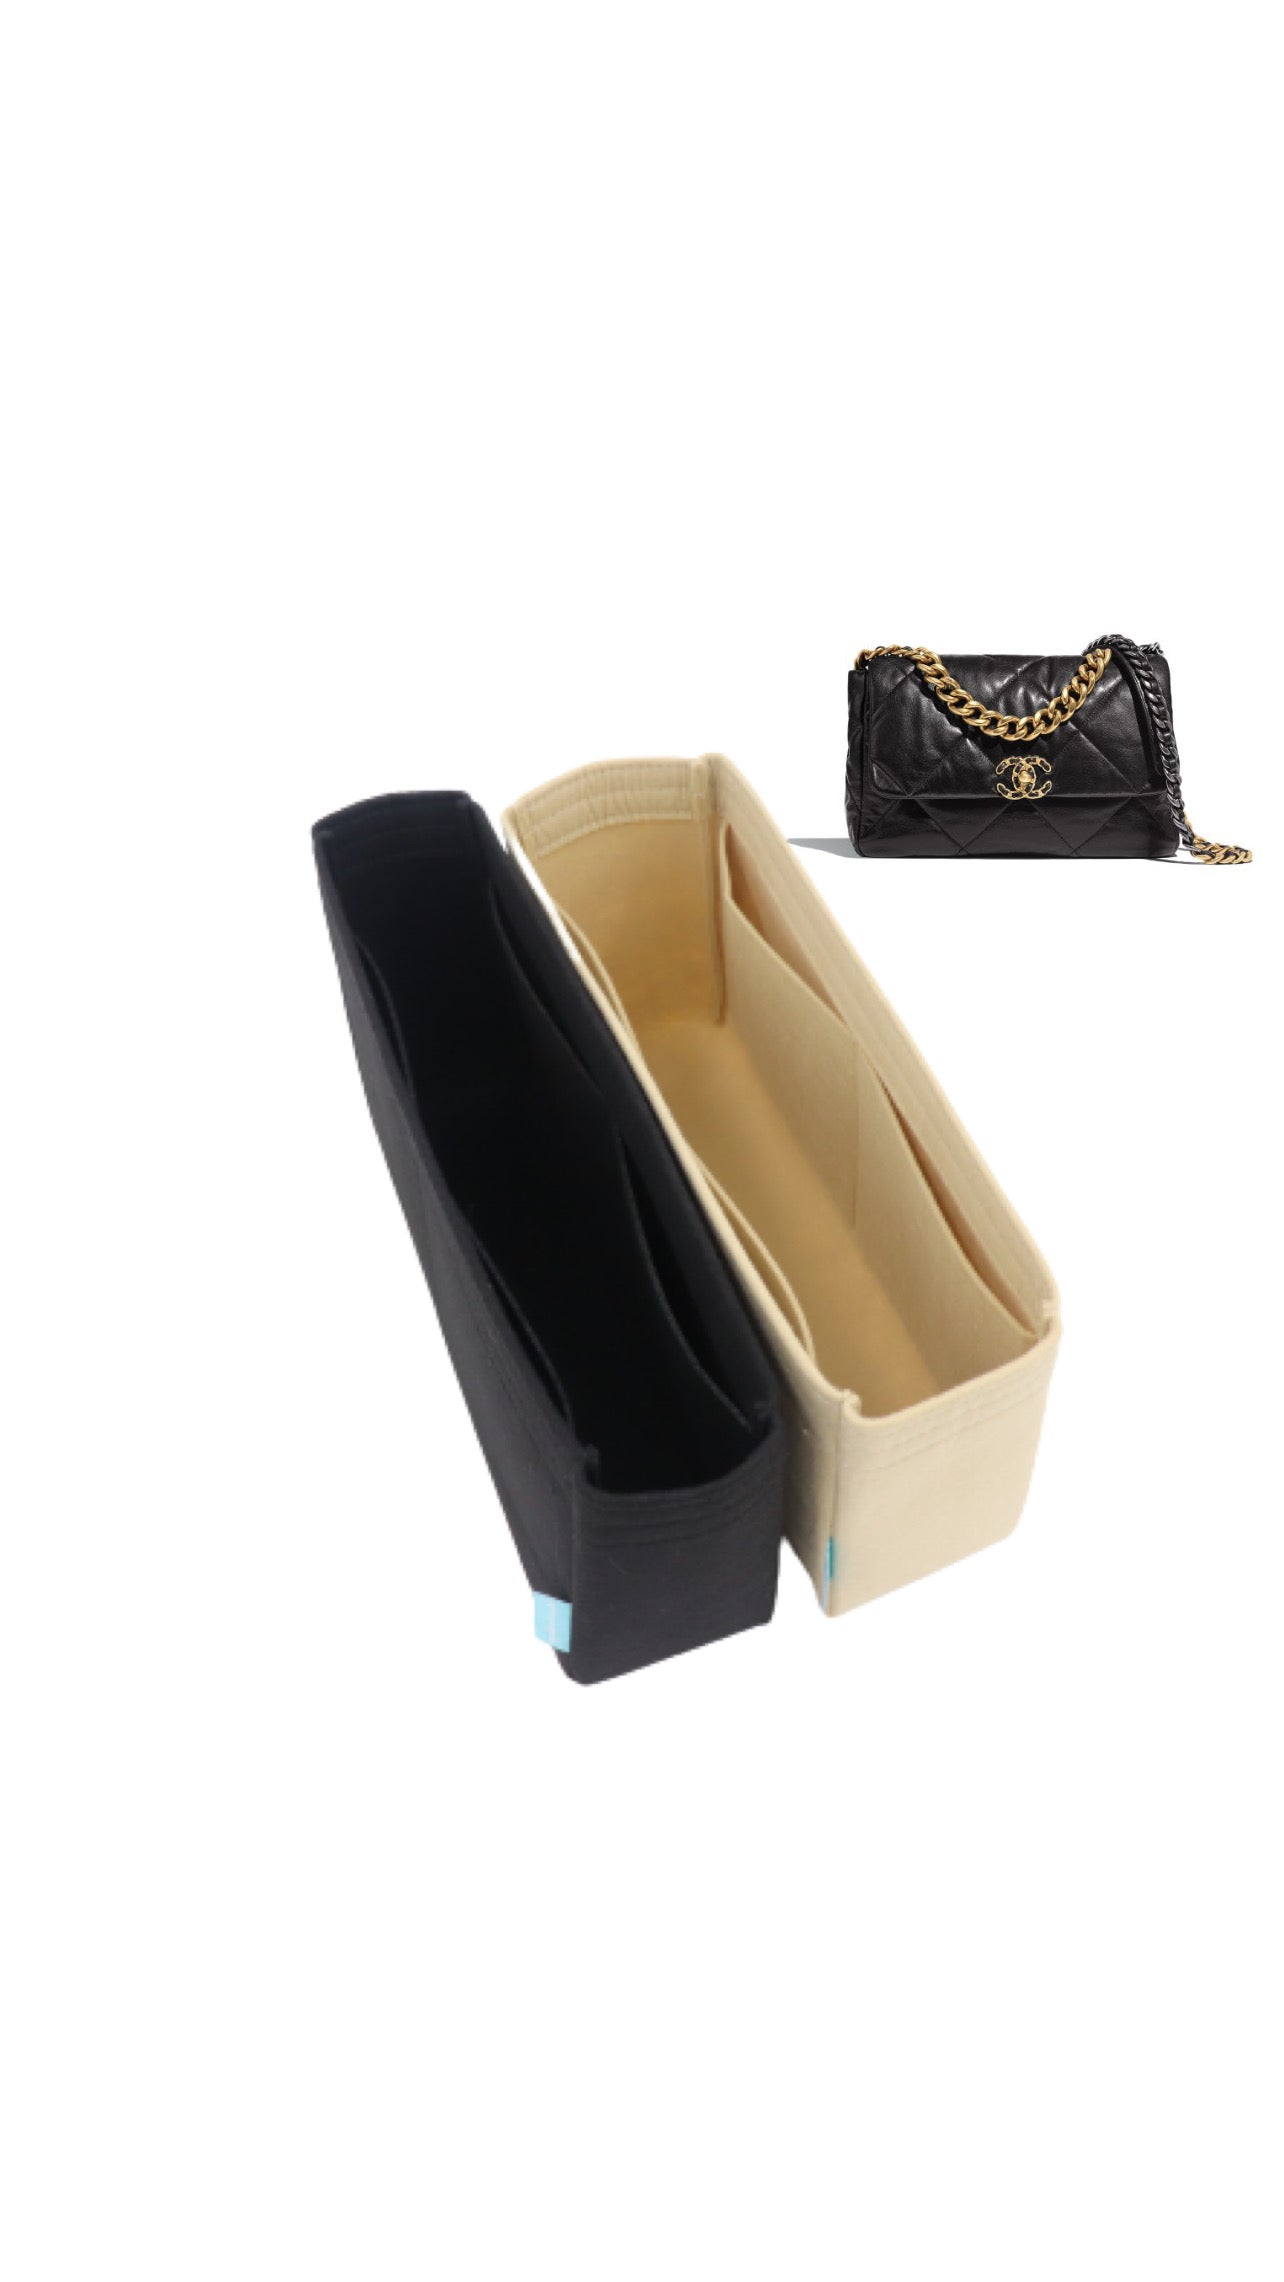 Lckaey Purse Organizer Insert for Chanel 19 Small bag with Side Zipper  Pocket Handbag Chanel Maxi Flip bag Organizer Y002beige-M